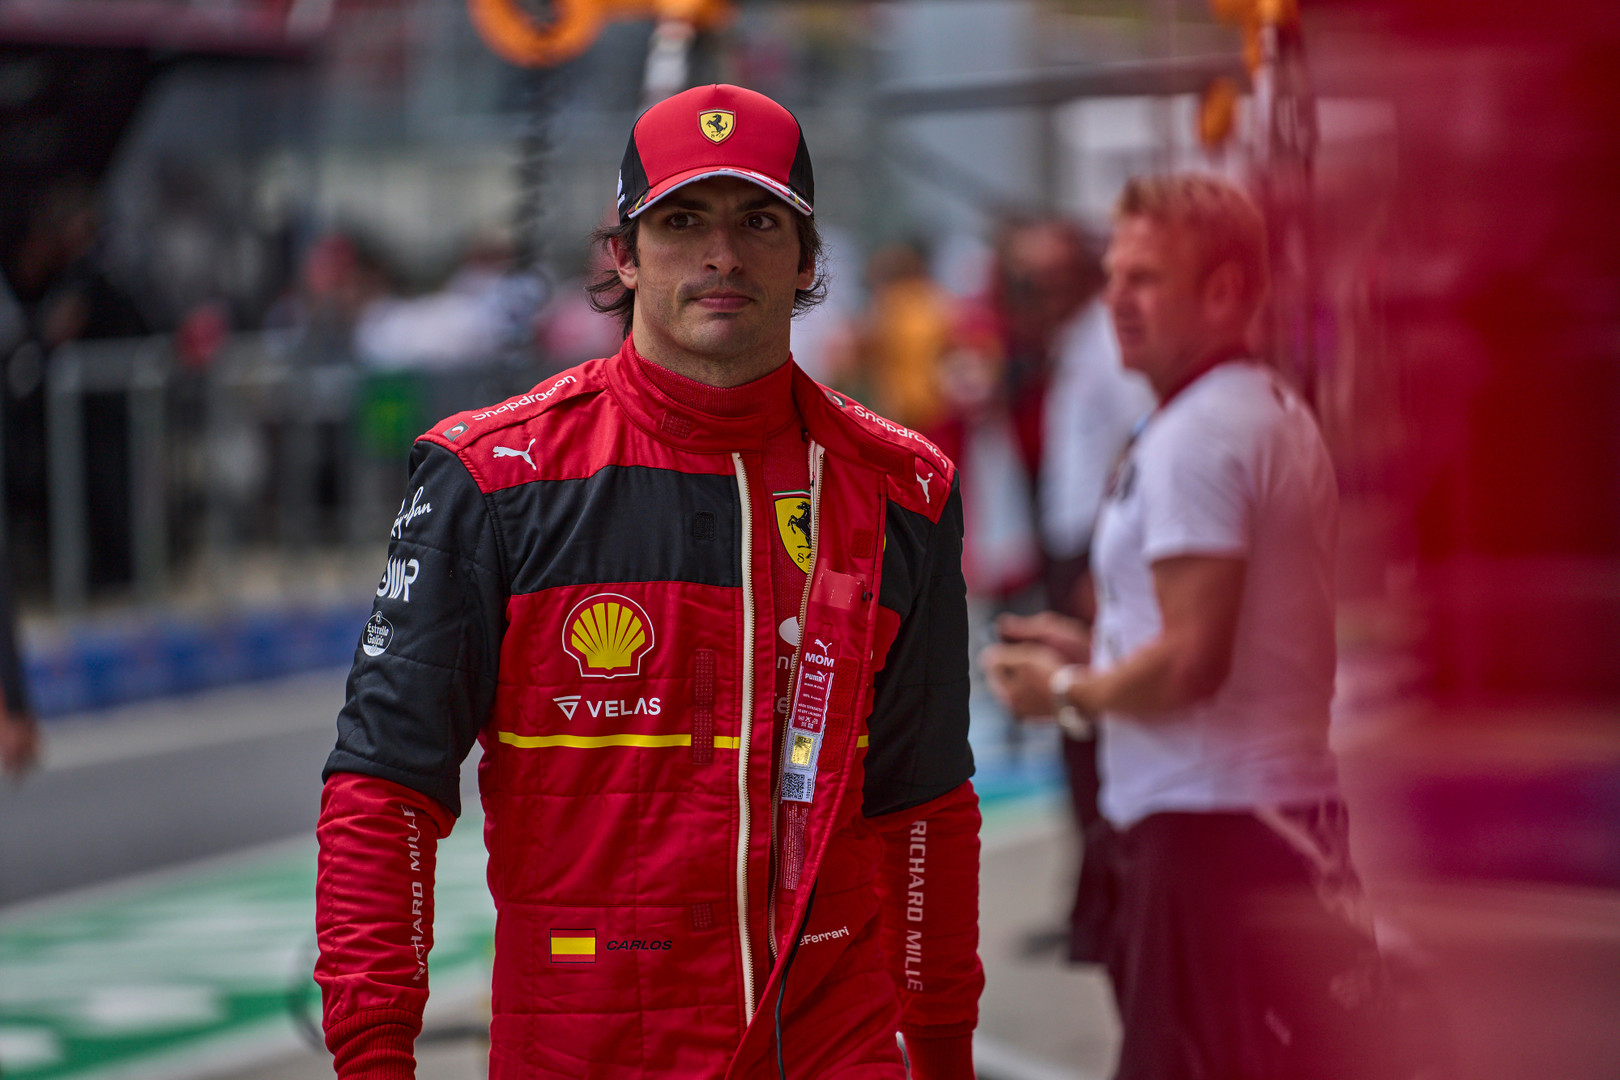 Ferrari podejrzewa, że usterka Sainza nie była niczym nowym